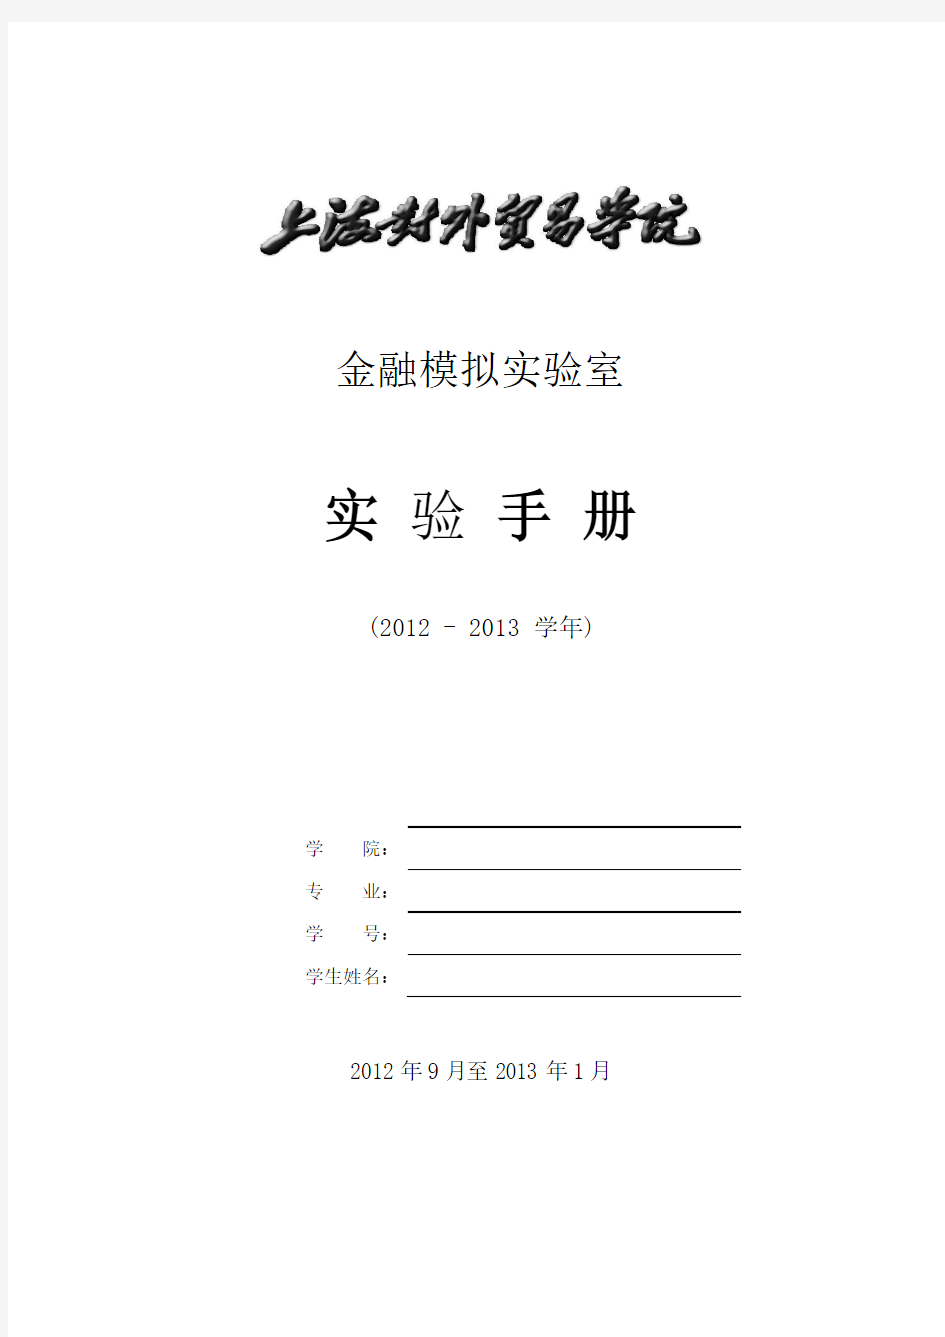 金融实验手册(资产经营、保险、金融工程、资产评估)2012-2013(1)